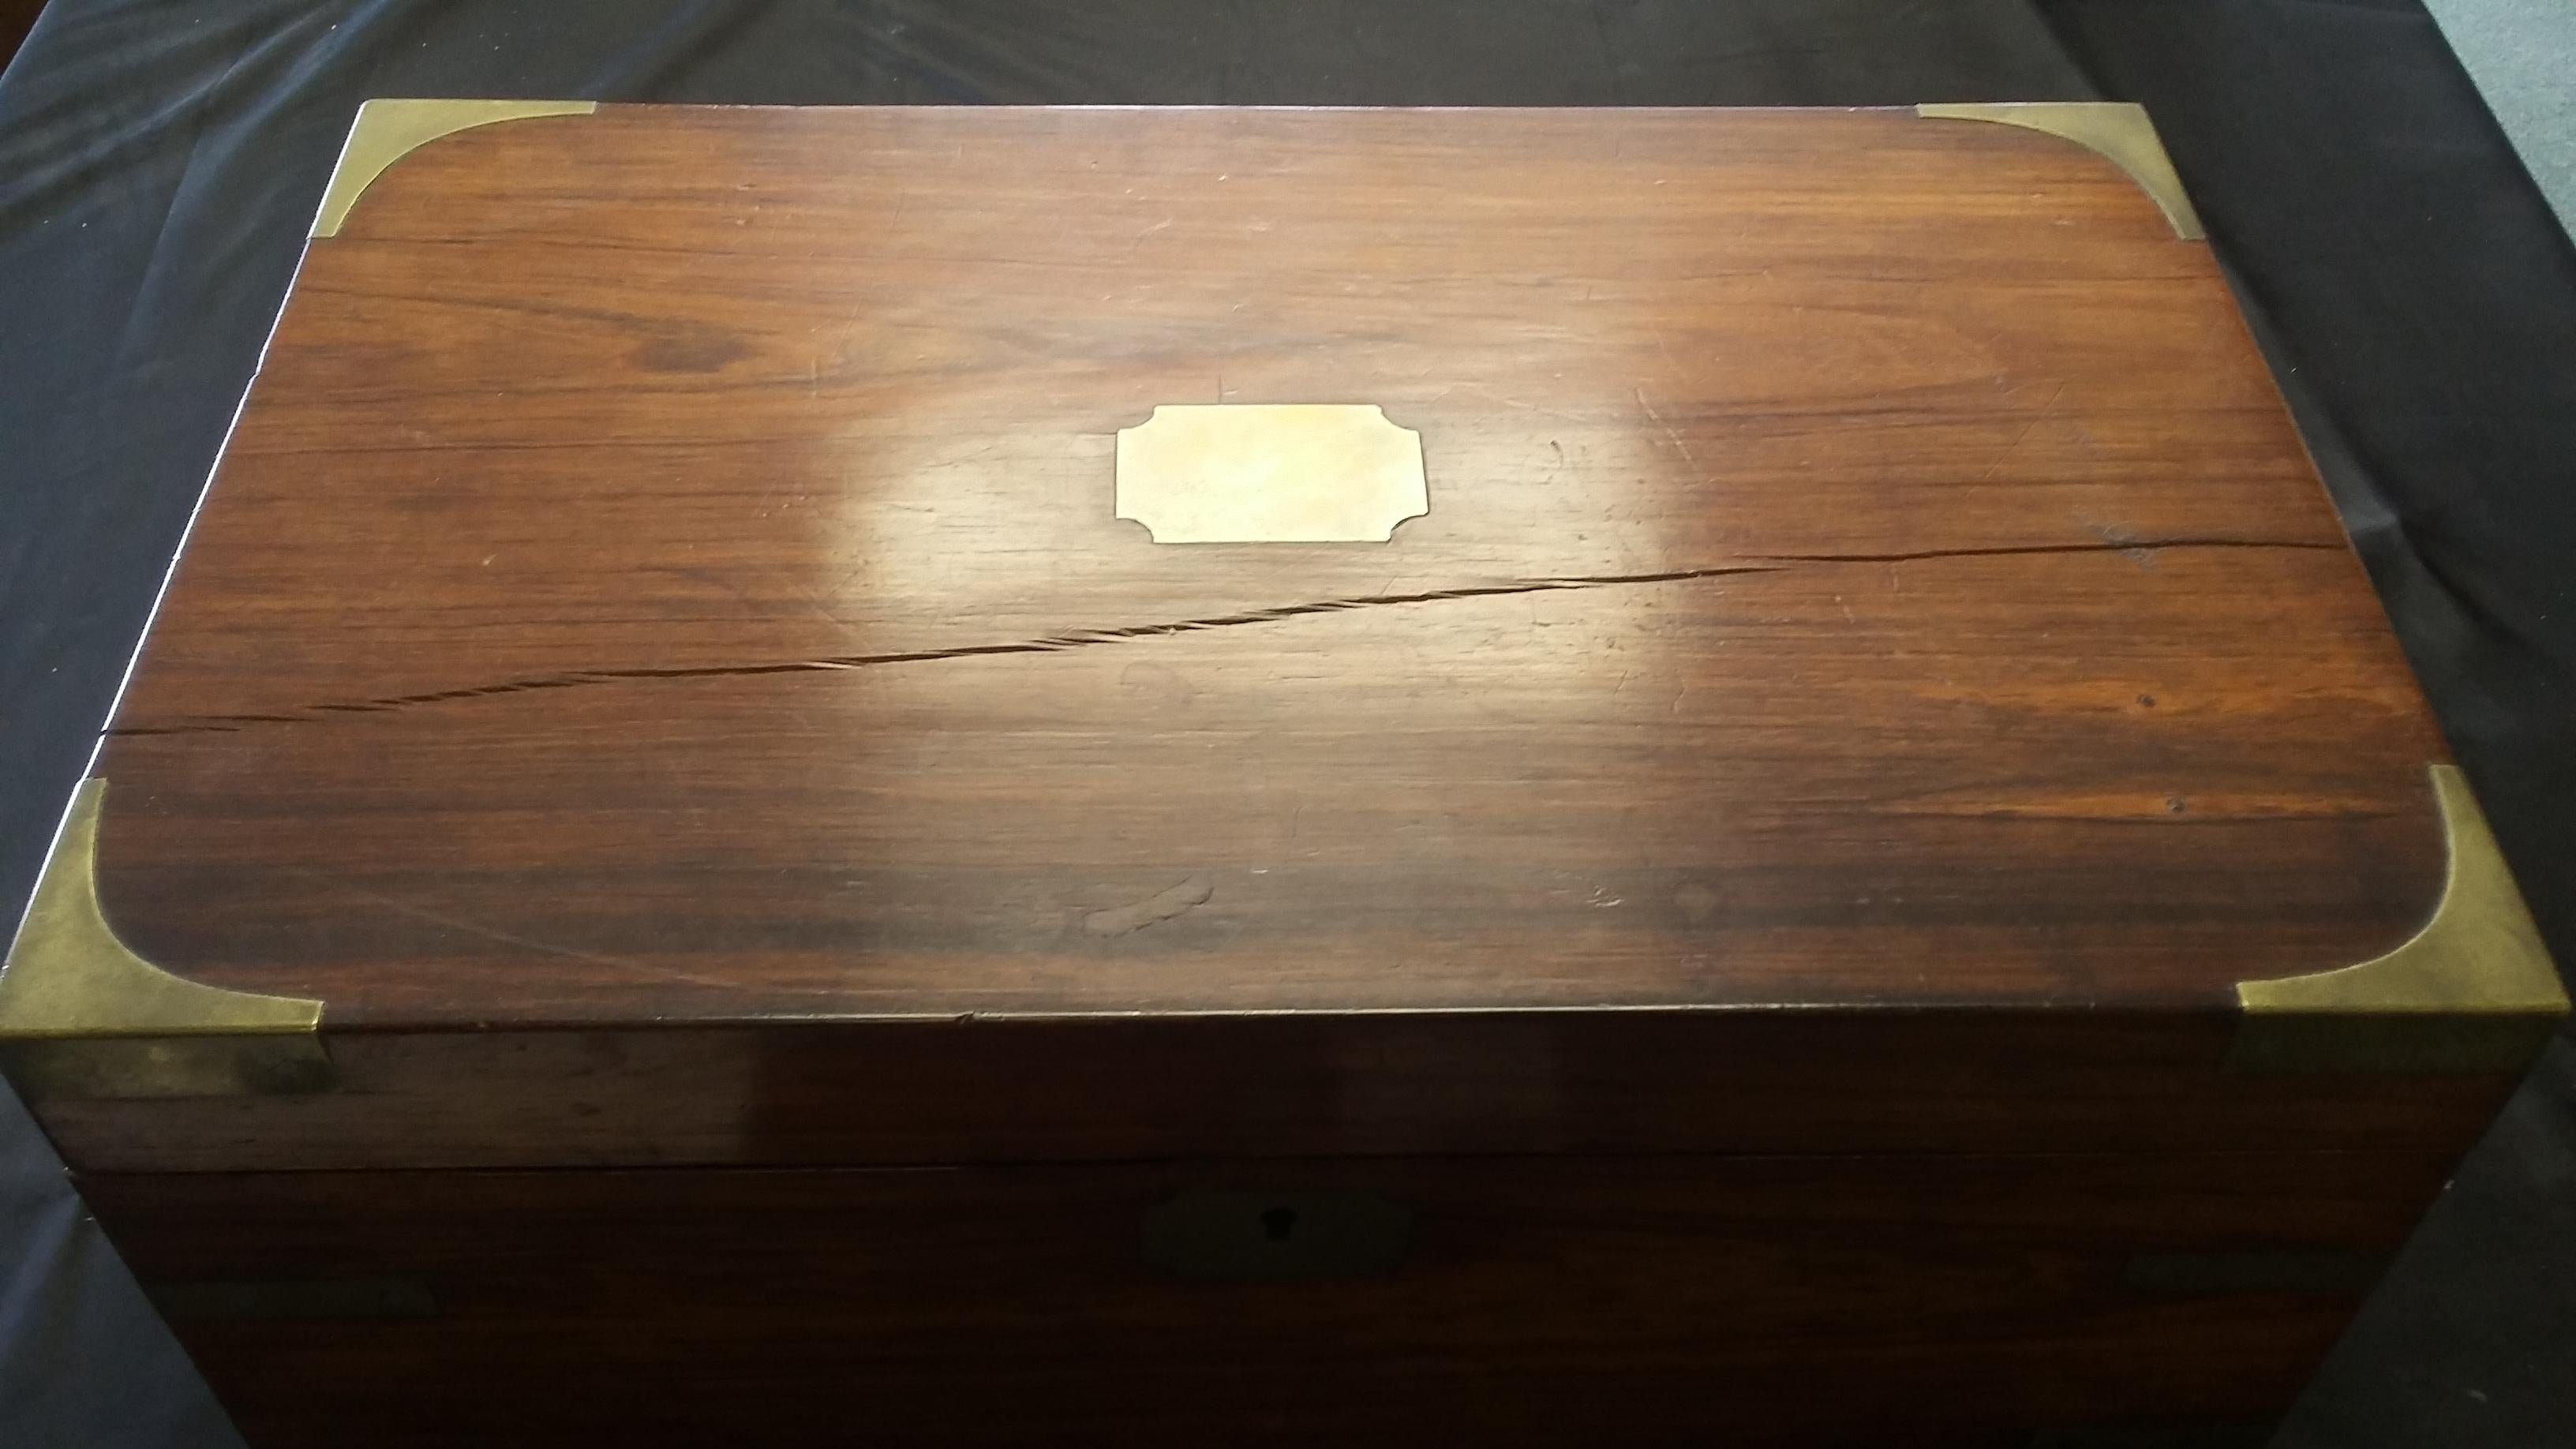 Schöner Rosenholz-Schreibtisch aus dem frühen 19. Jahrhundert. Hergestellt in England, um 1830. Mit Messingecken und einer Schreibfläche aus braunem Leder mit Goldprägung. Die linke Seite hat eine verdeckte oder 